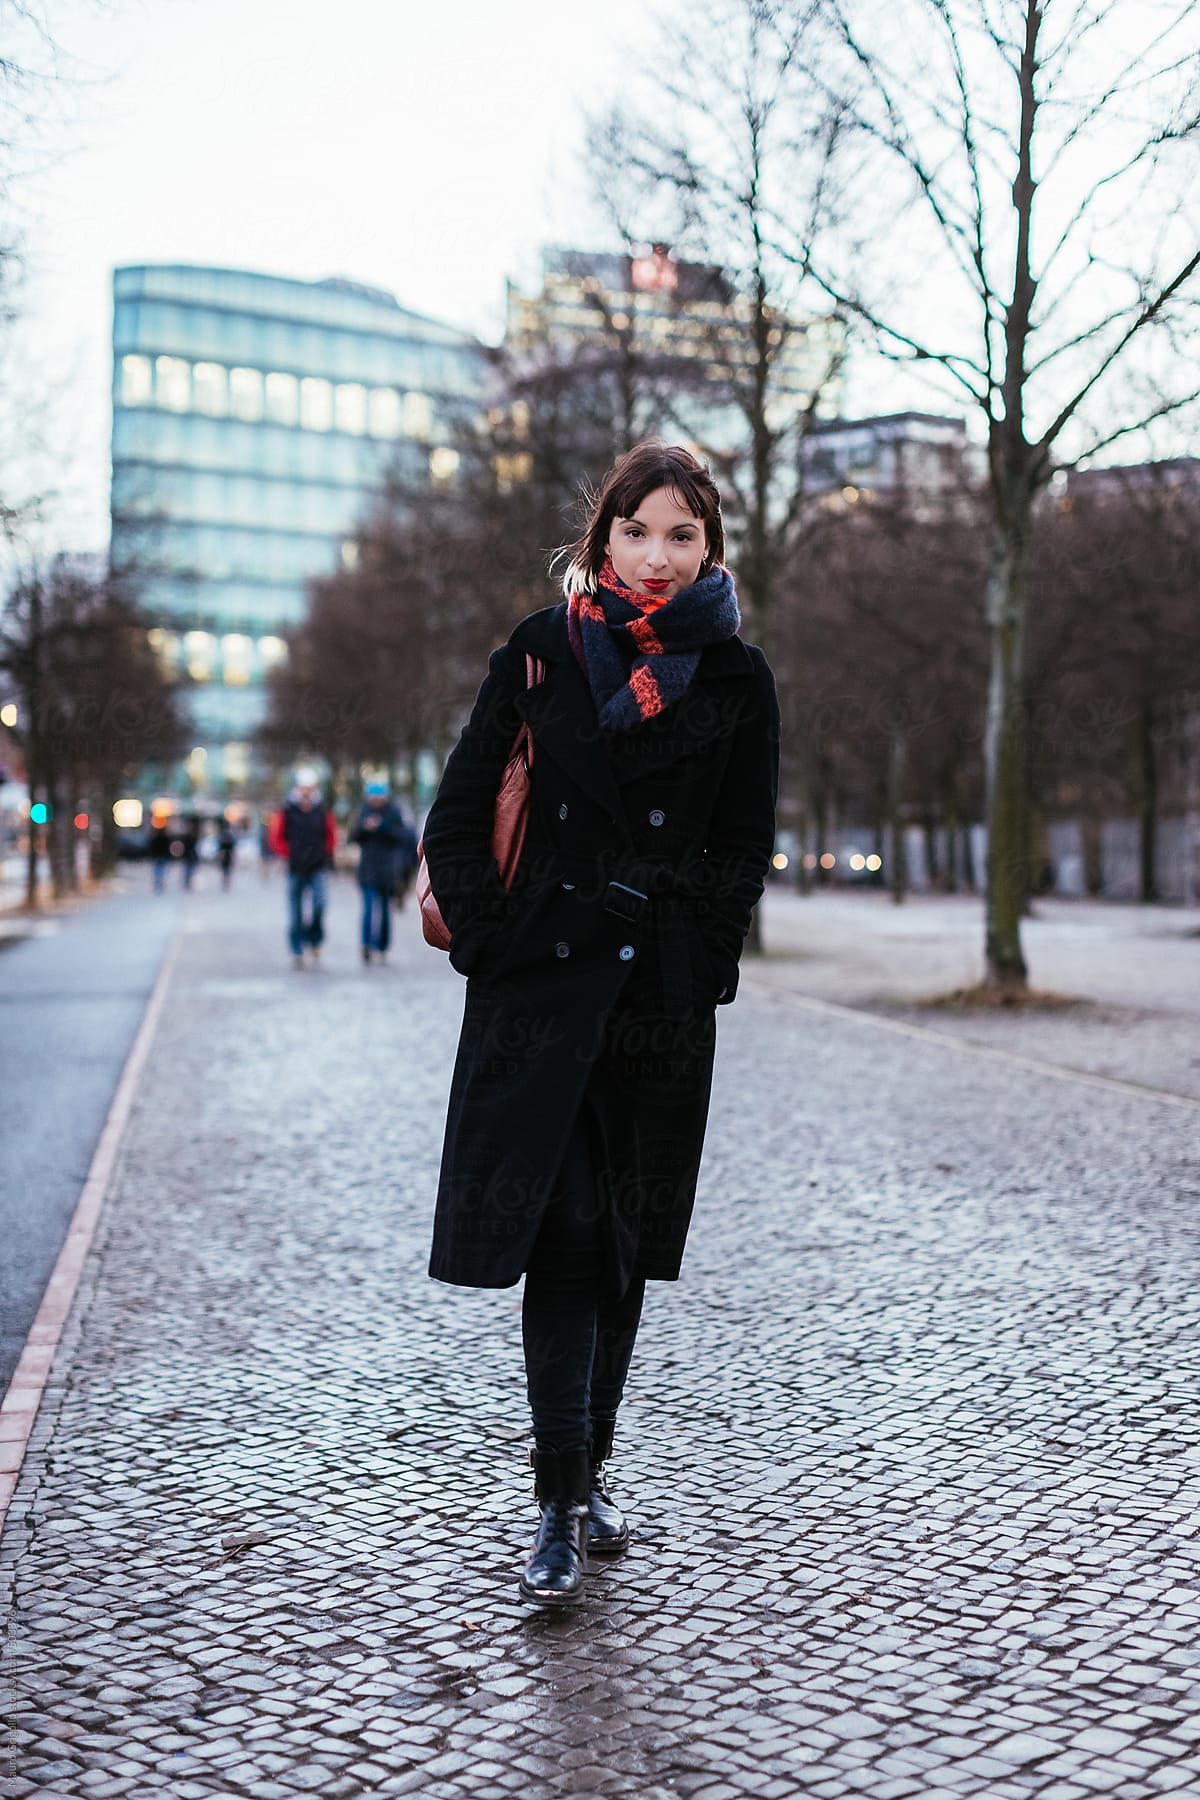 Woman walking on a walkway in the city in winter